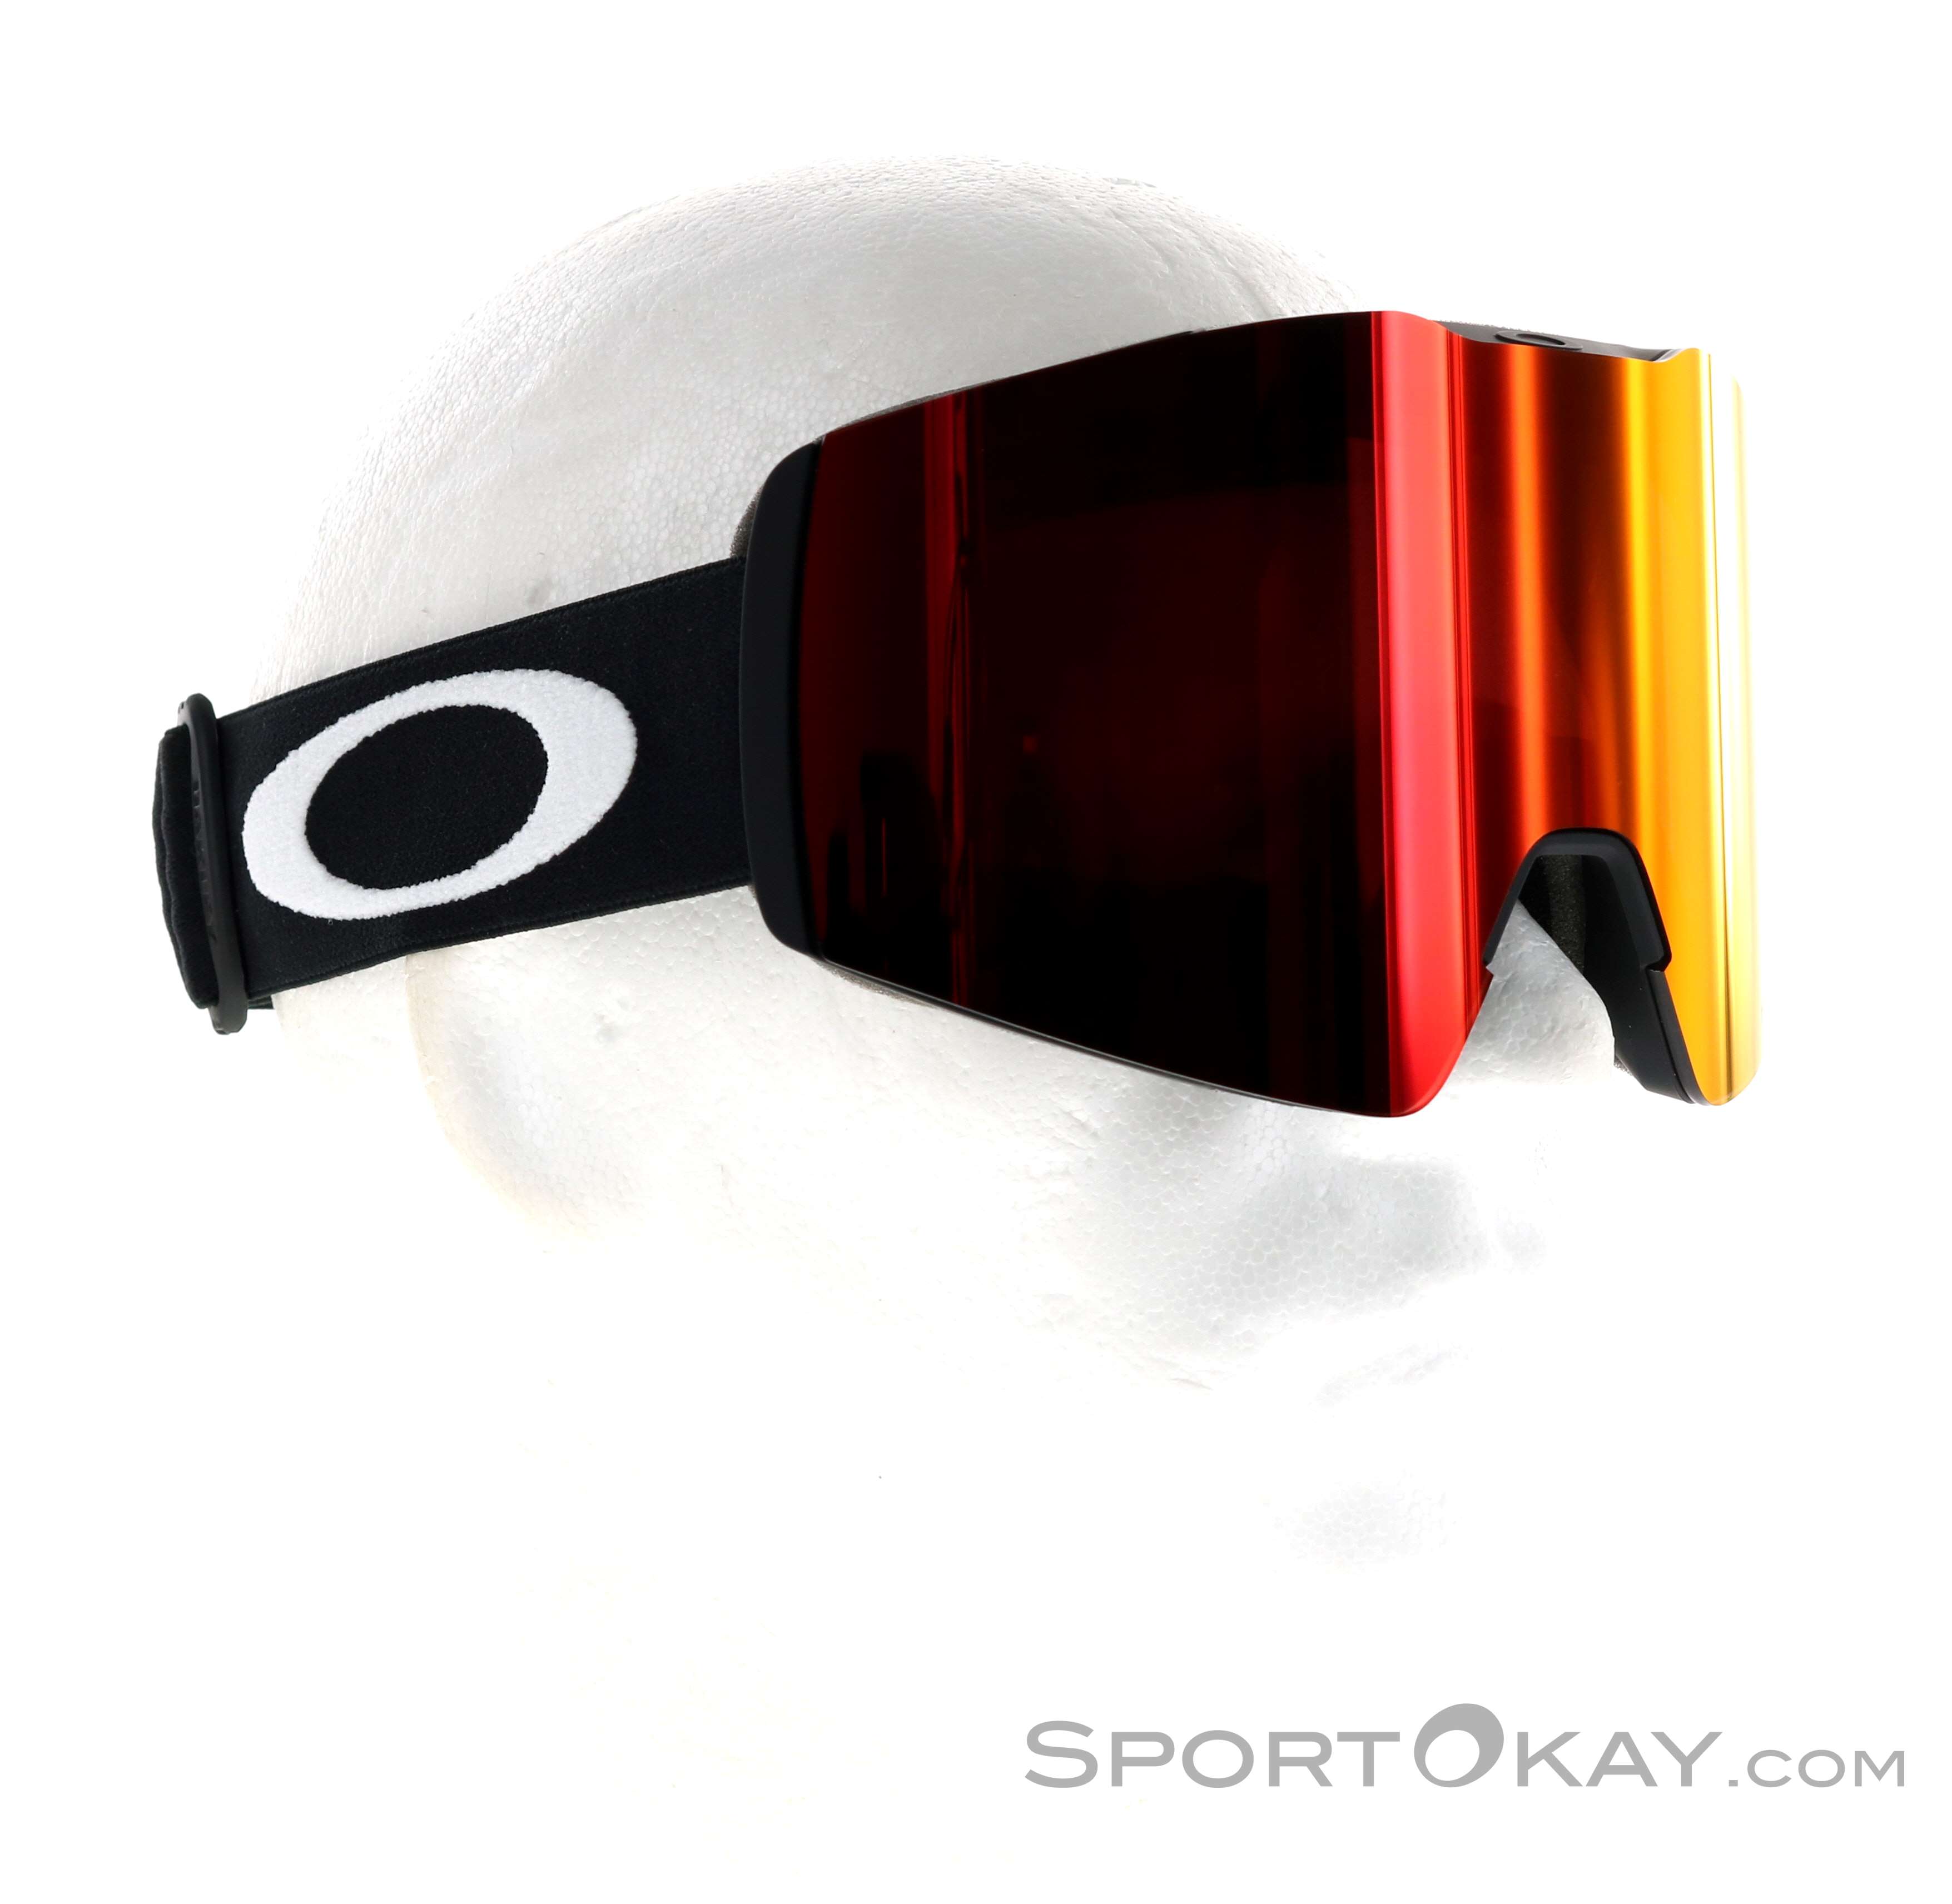 oakley fall line prizm ski goggle